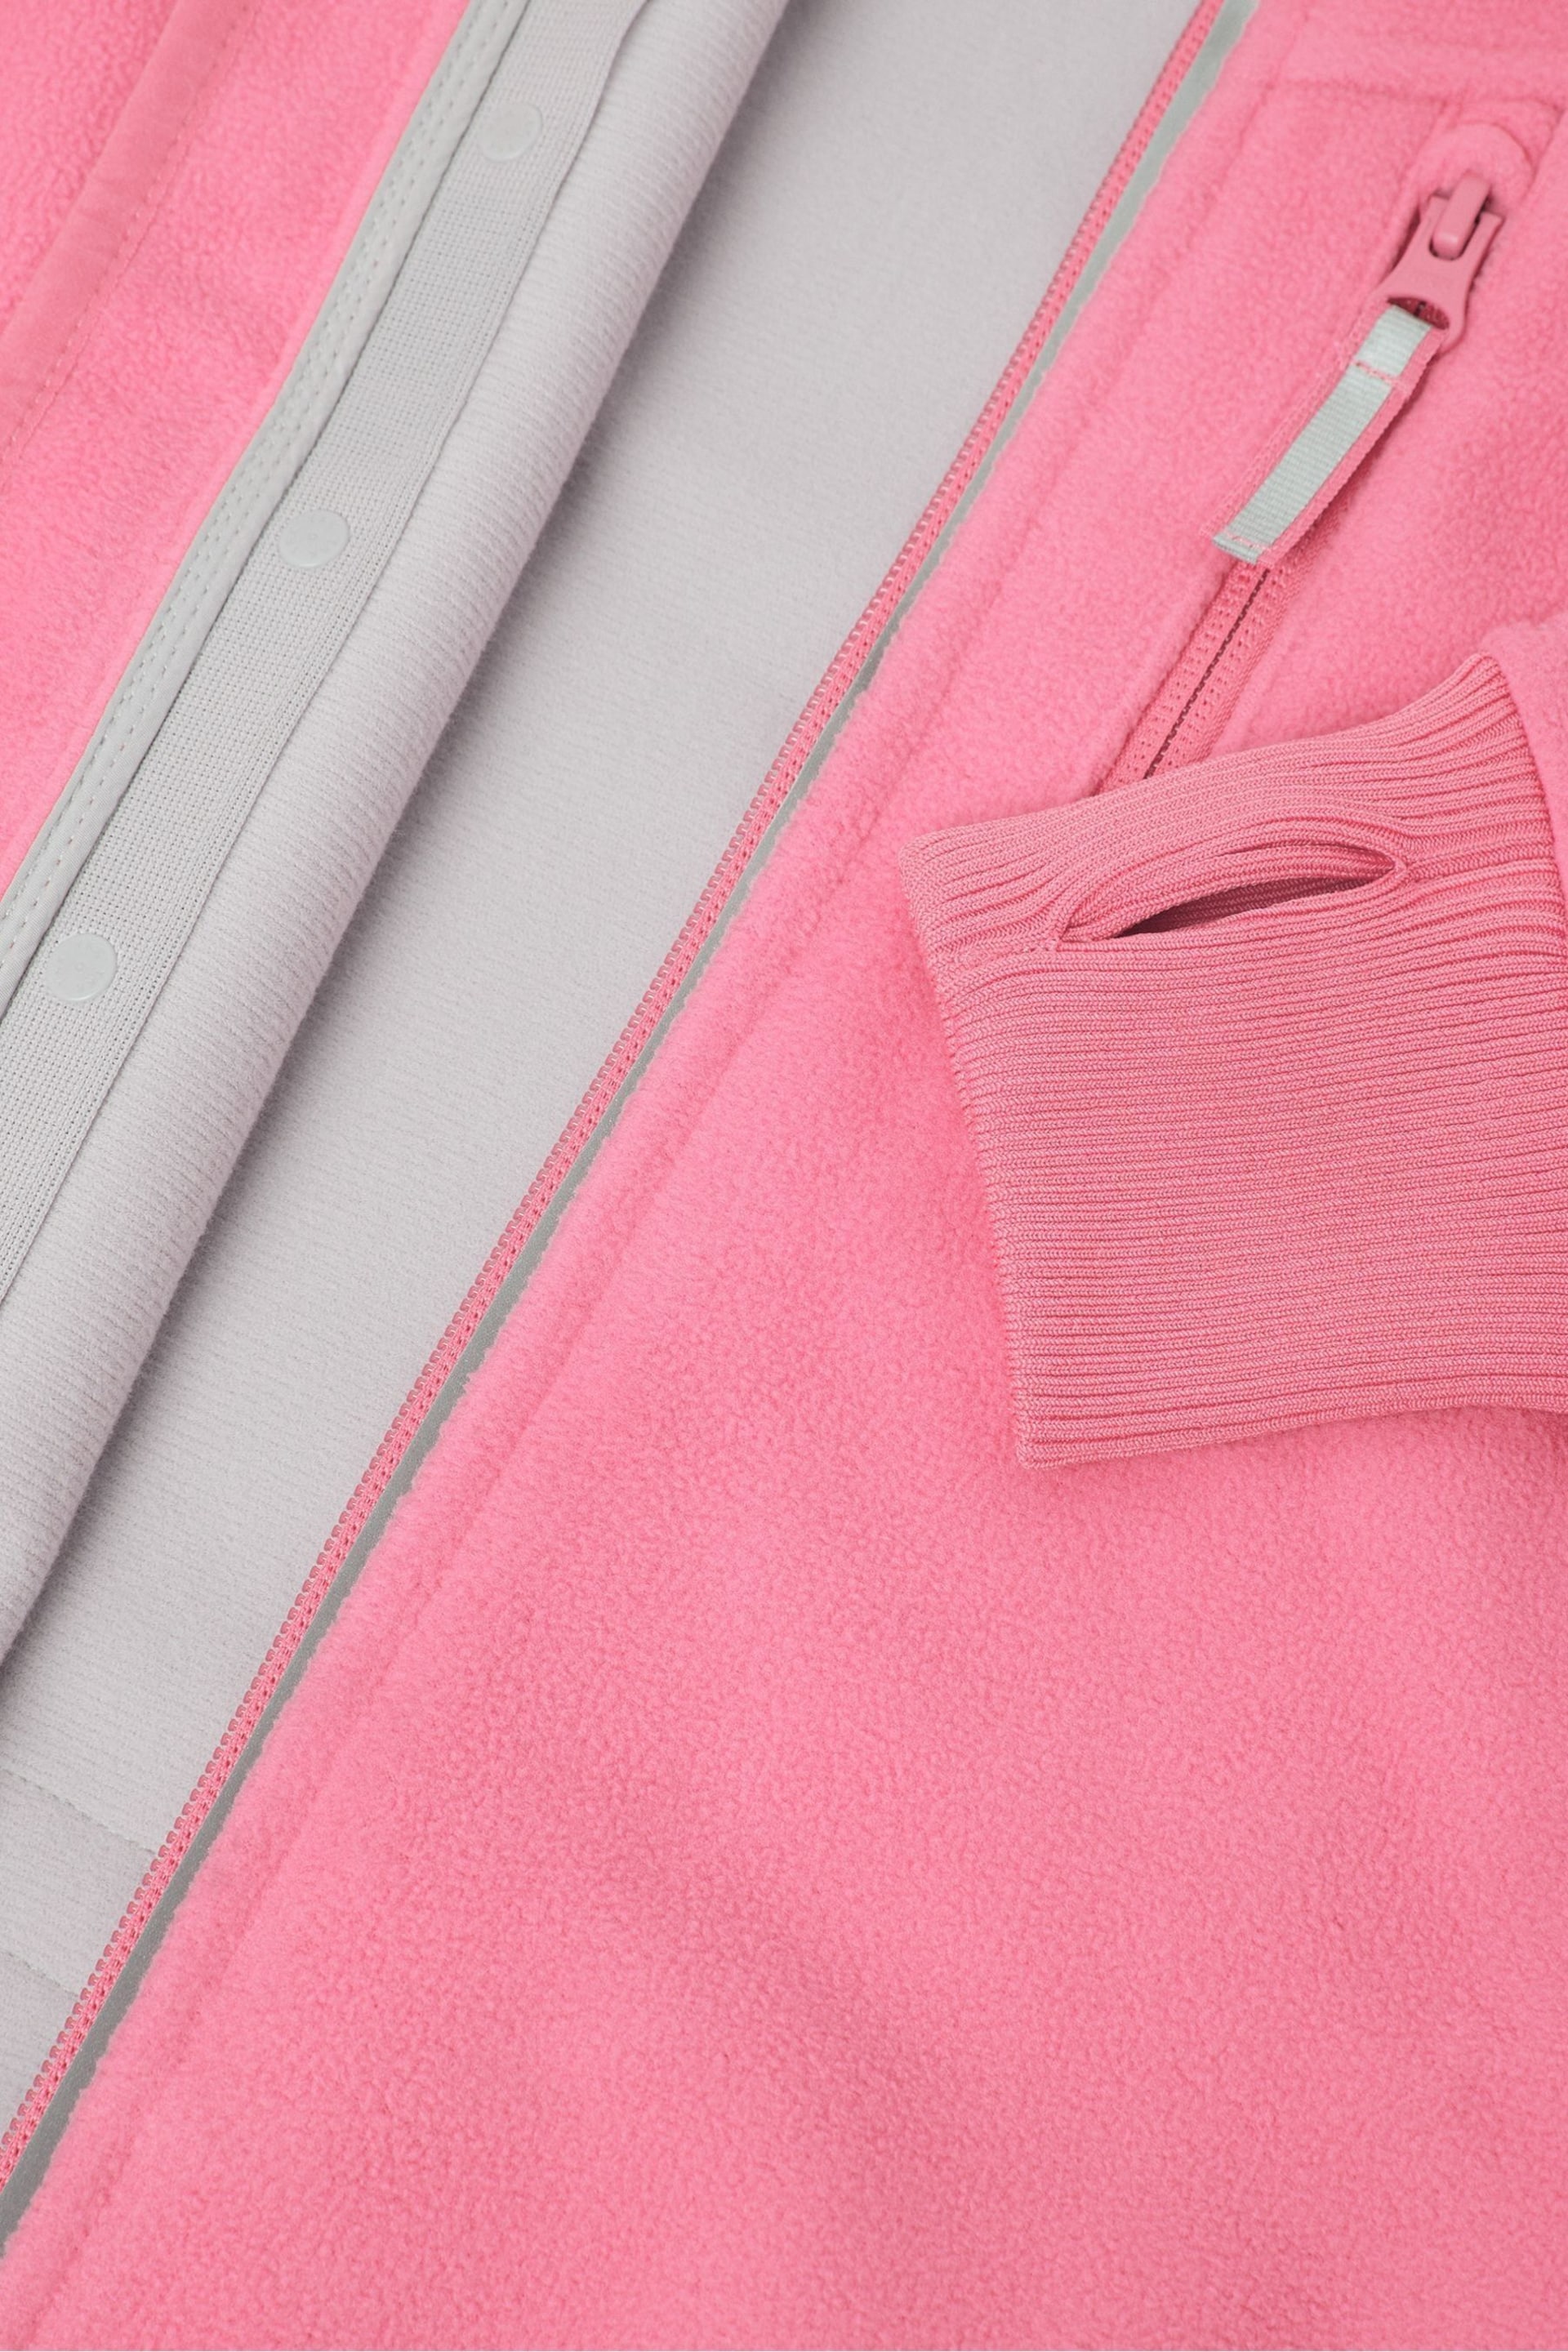 Polarn O. Pyret Pink Waterproof Fleece Jacket - Image 4 of 5